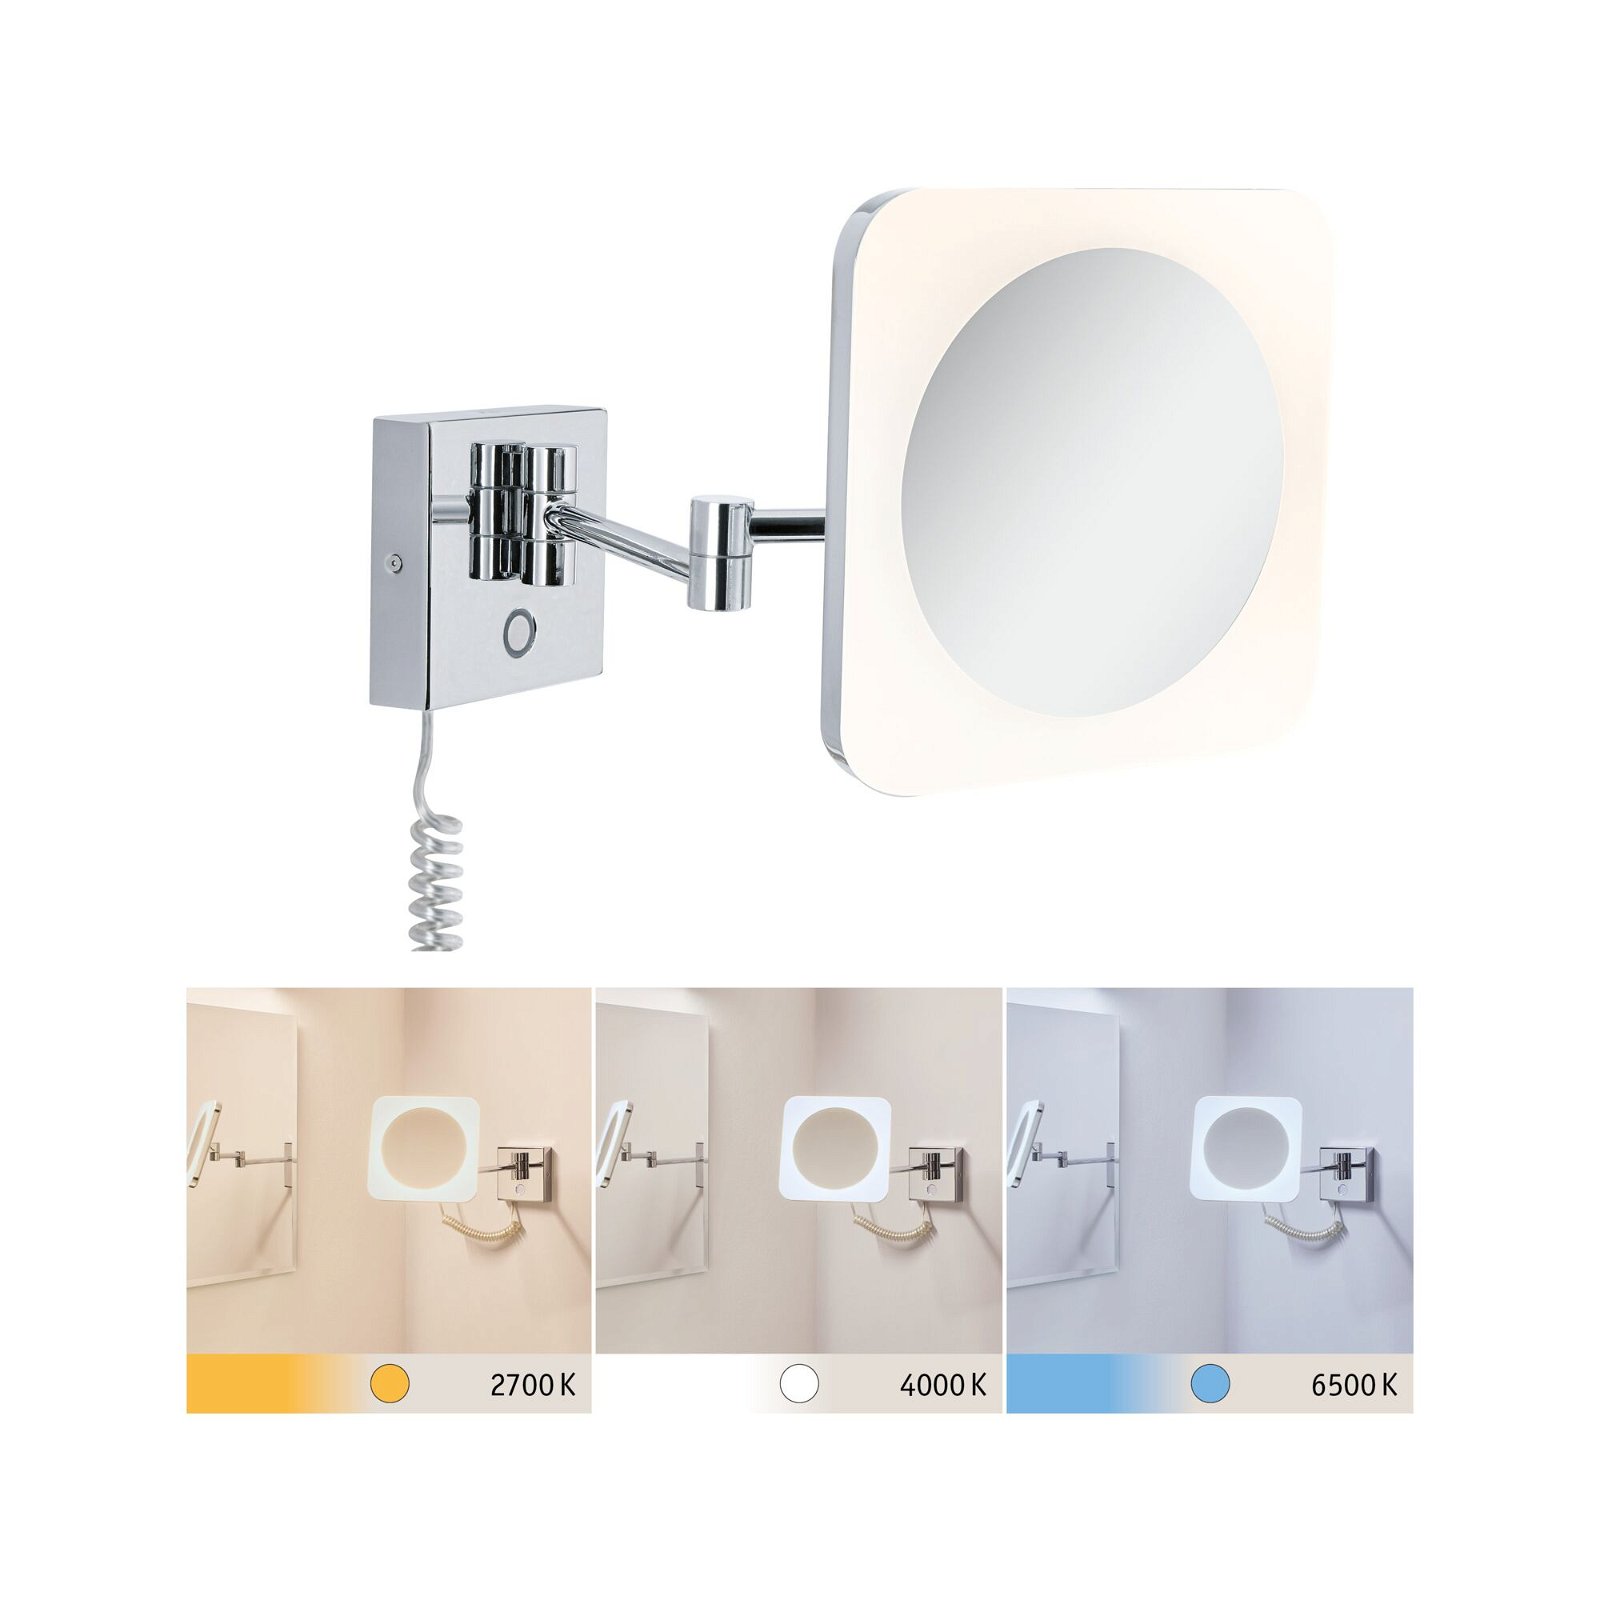 LED Kosmetikspiegel Jora IP44 White Switch 60lm 230V 3,3W Chrom/Weiß/Spiegel | Wandleuchten